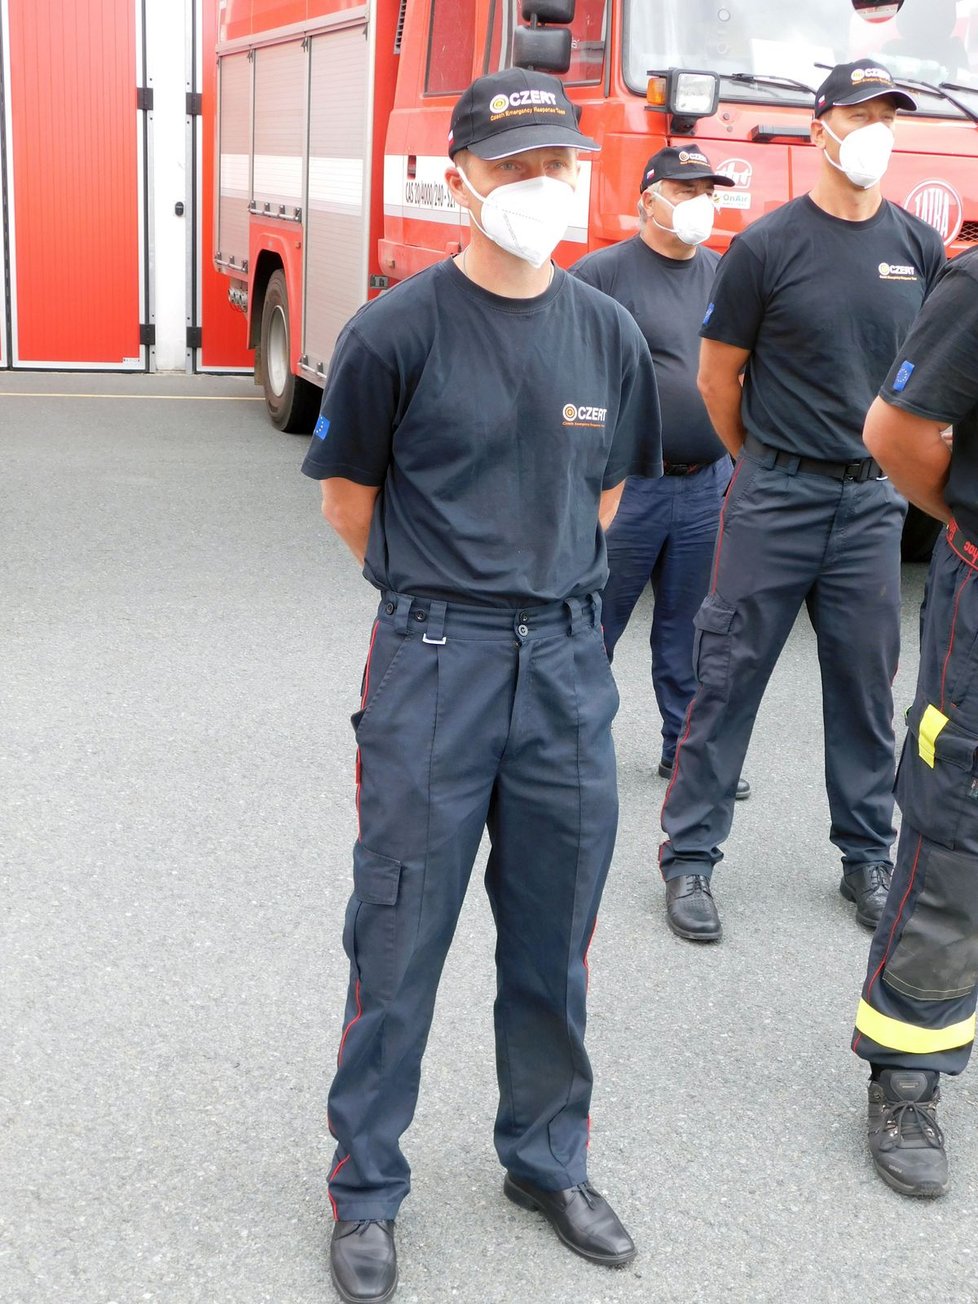 Velitel jednotky Richard Franc (46) slouží v Moravskoslezském kraji. U hasičů je od svých jedenadvaceti roků.